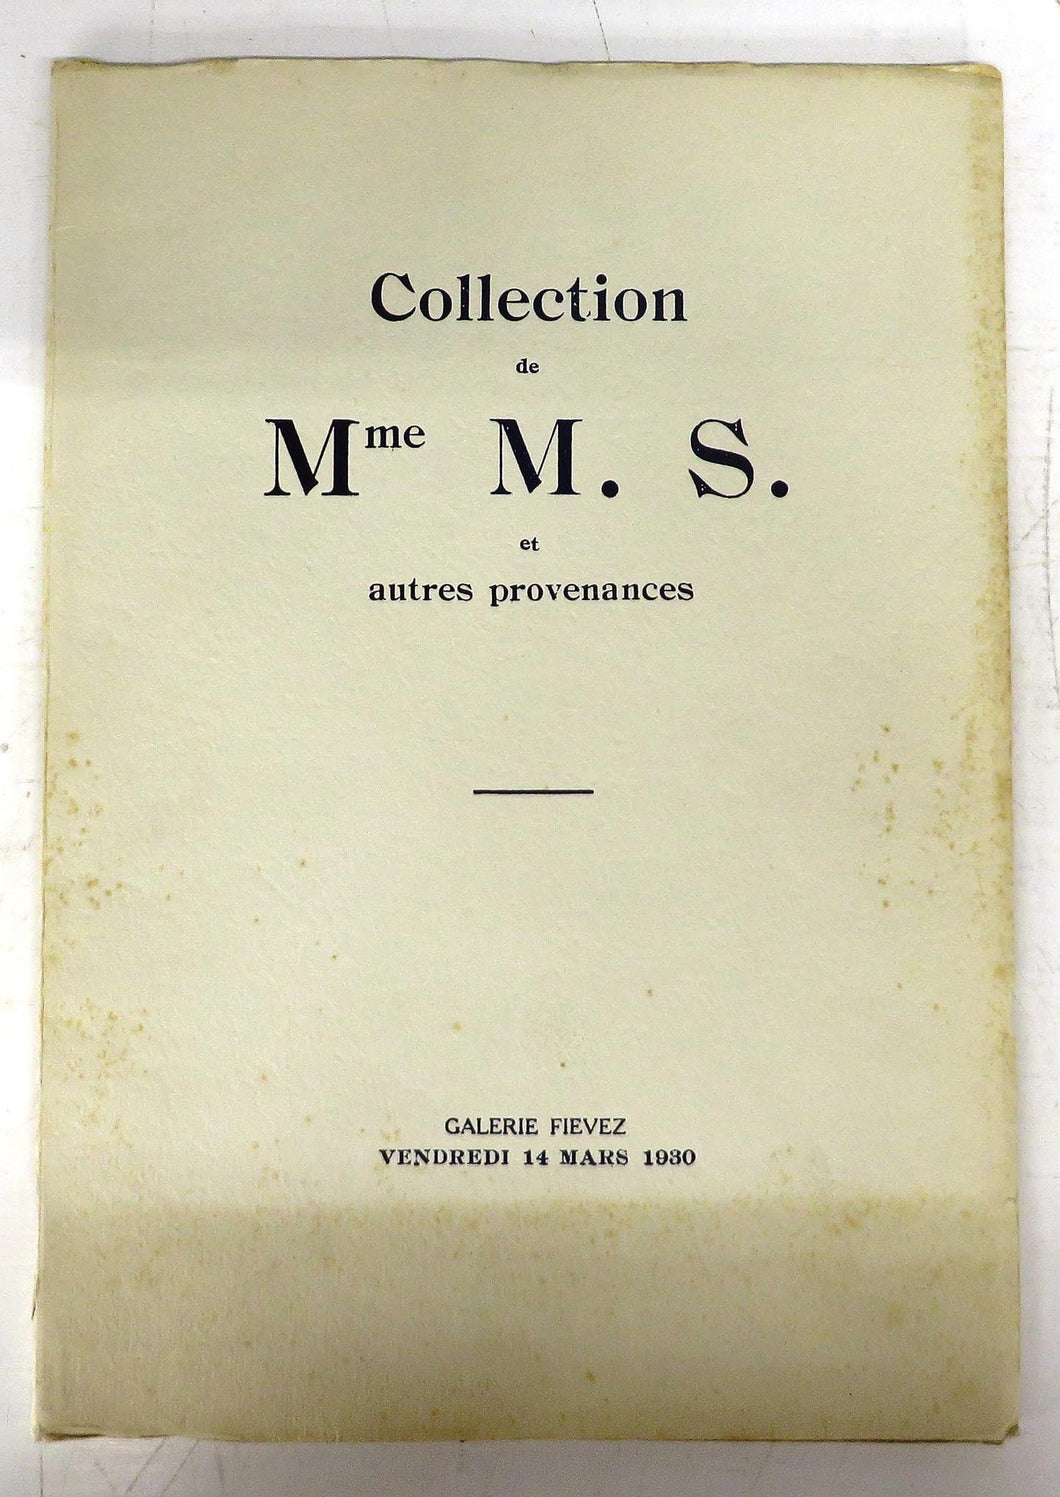 Collection de Mme M. S. et autres provenances: Catalogue de Tableaux des Ecoles allemande, espagnole, flamande, Franaise, hollandaise et italienne du XVIe au XXe sicle